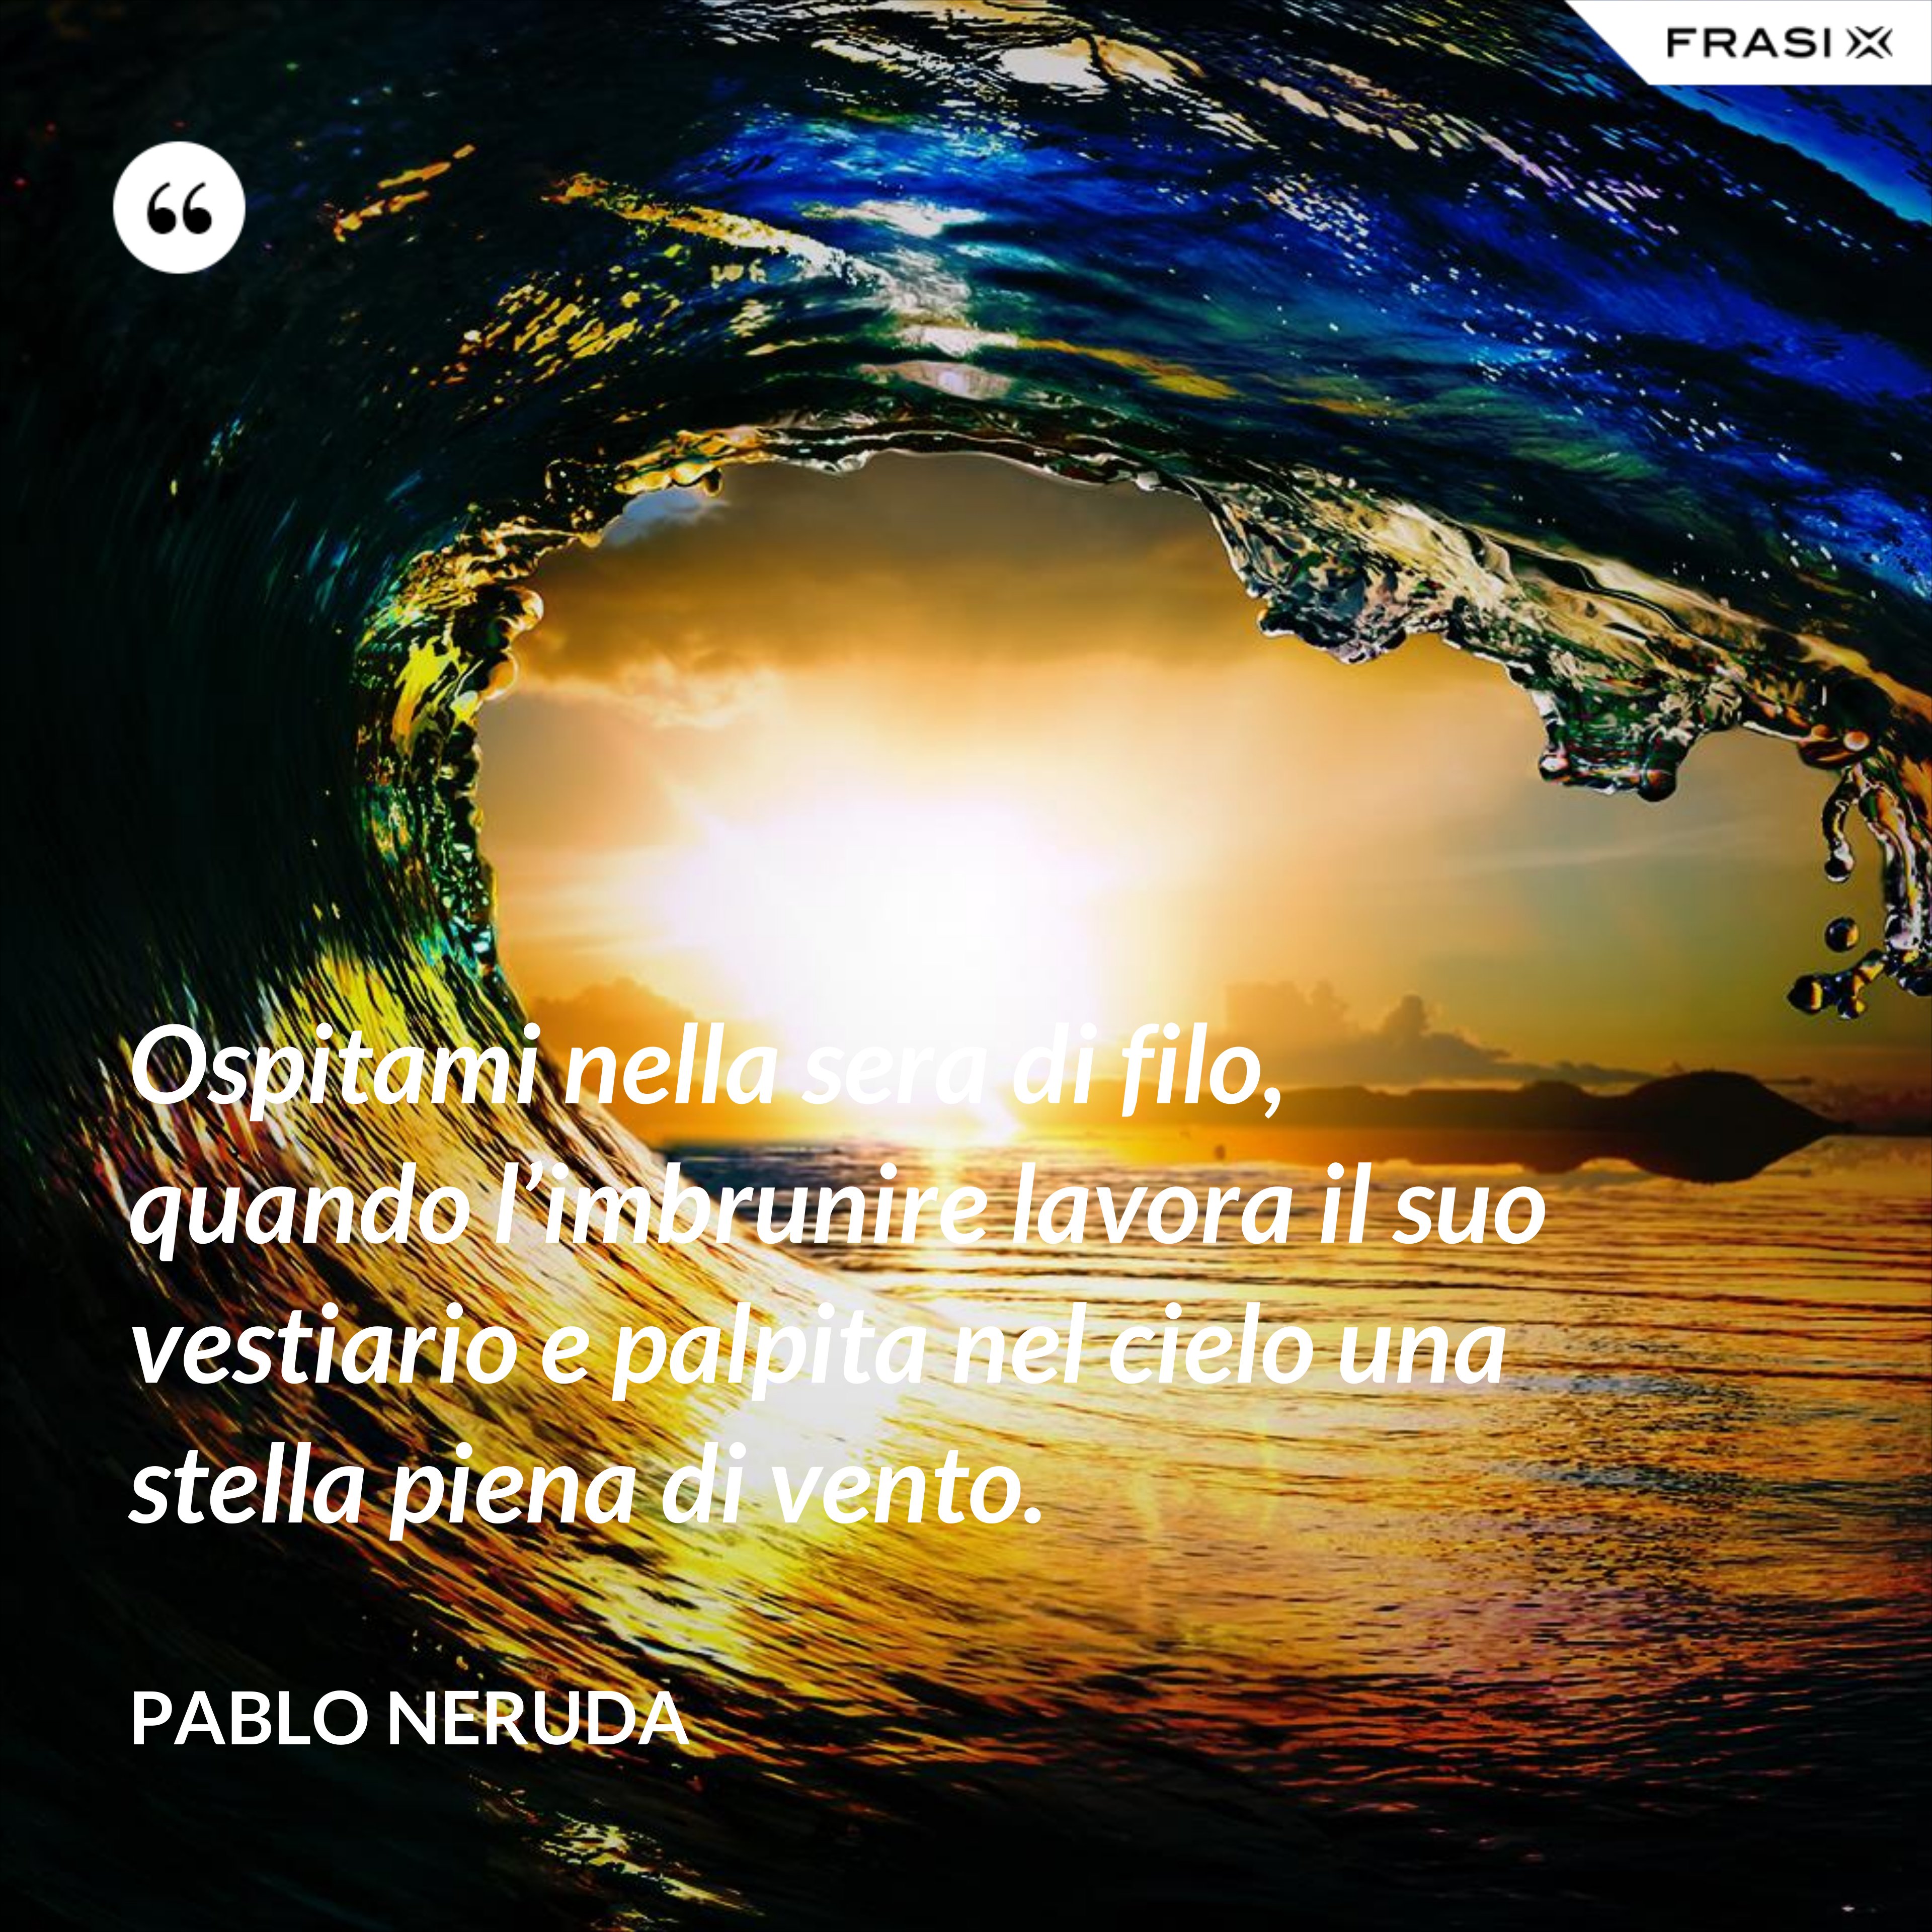 Ospitami nella sera di filo, quando l’imbrunire lavora il suo vestiario e palpita nel cielo una stella piena di vento. - Pablo Neruda